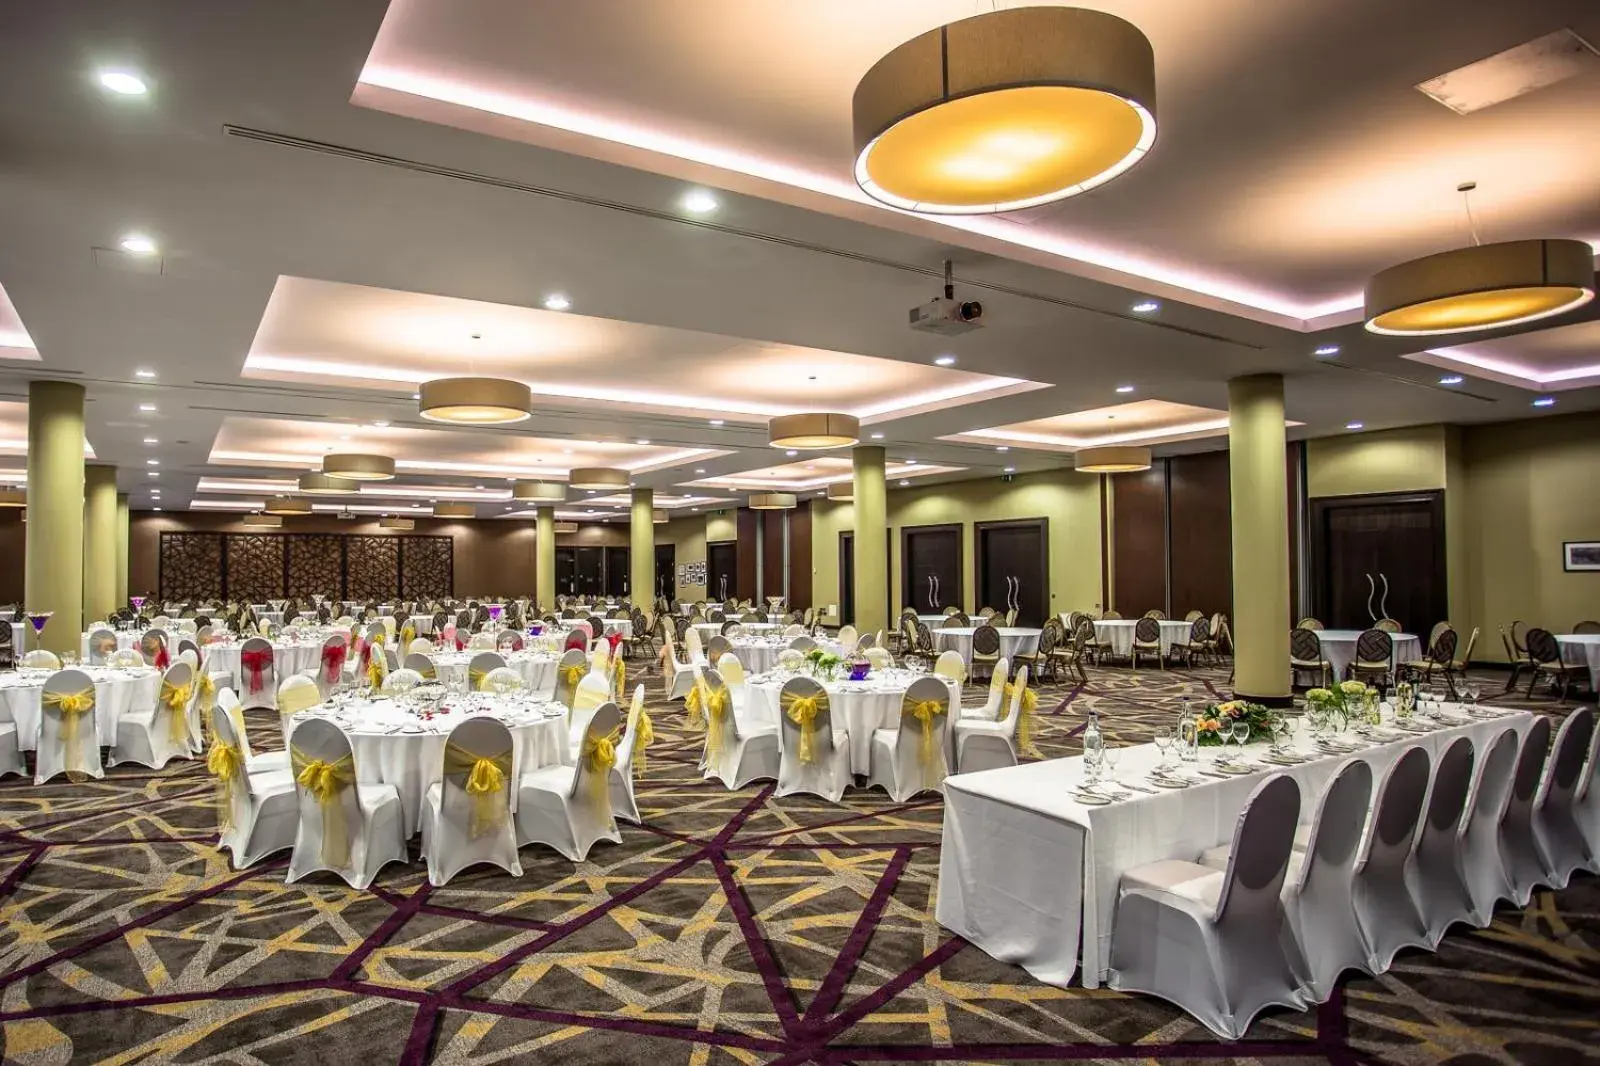 Banquet/Function facilities, Banquet Facilities in Heston Hyde Hotel